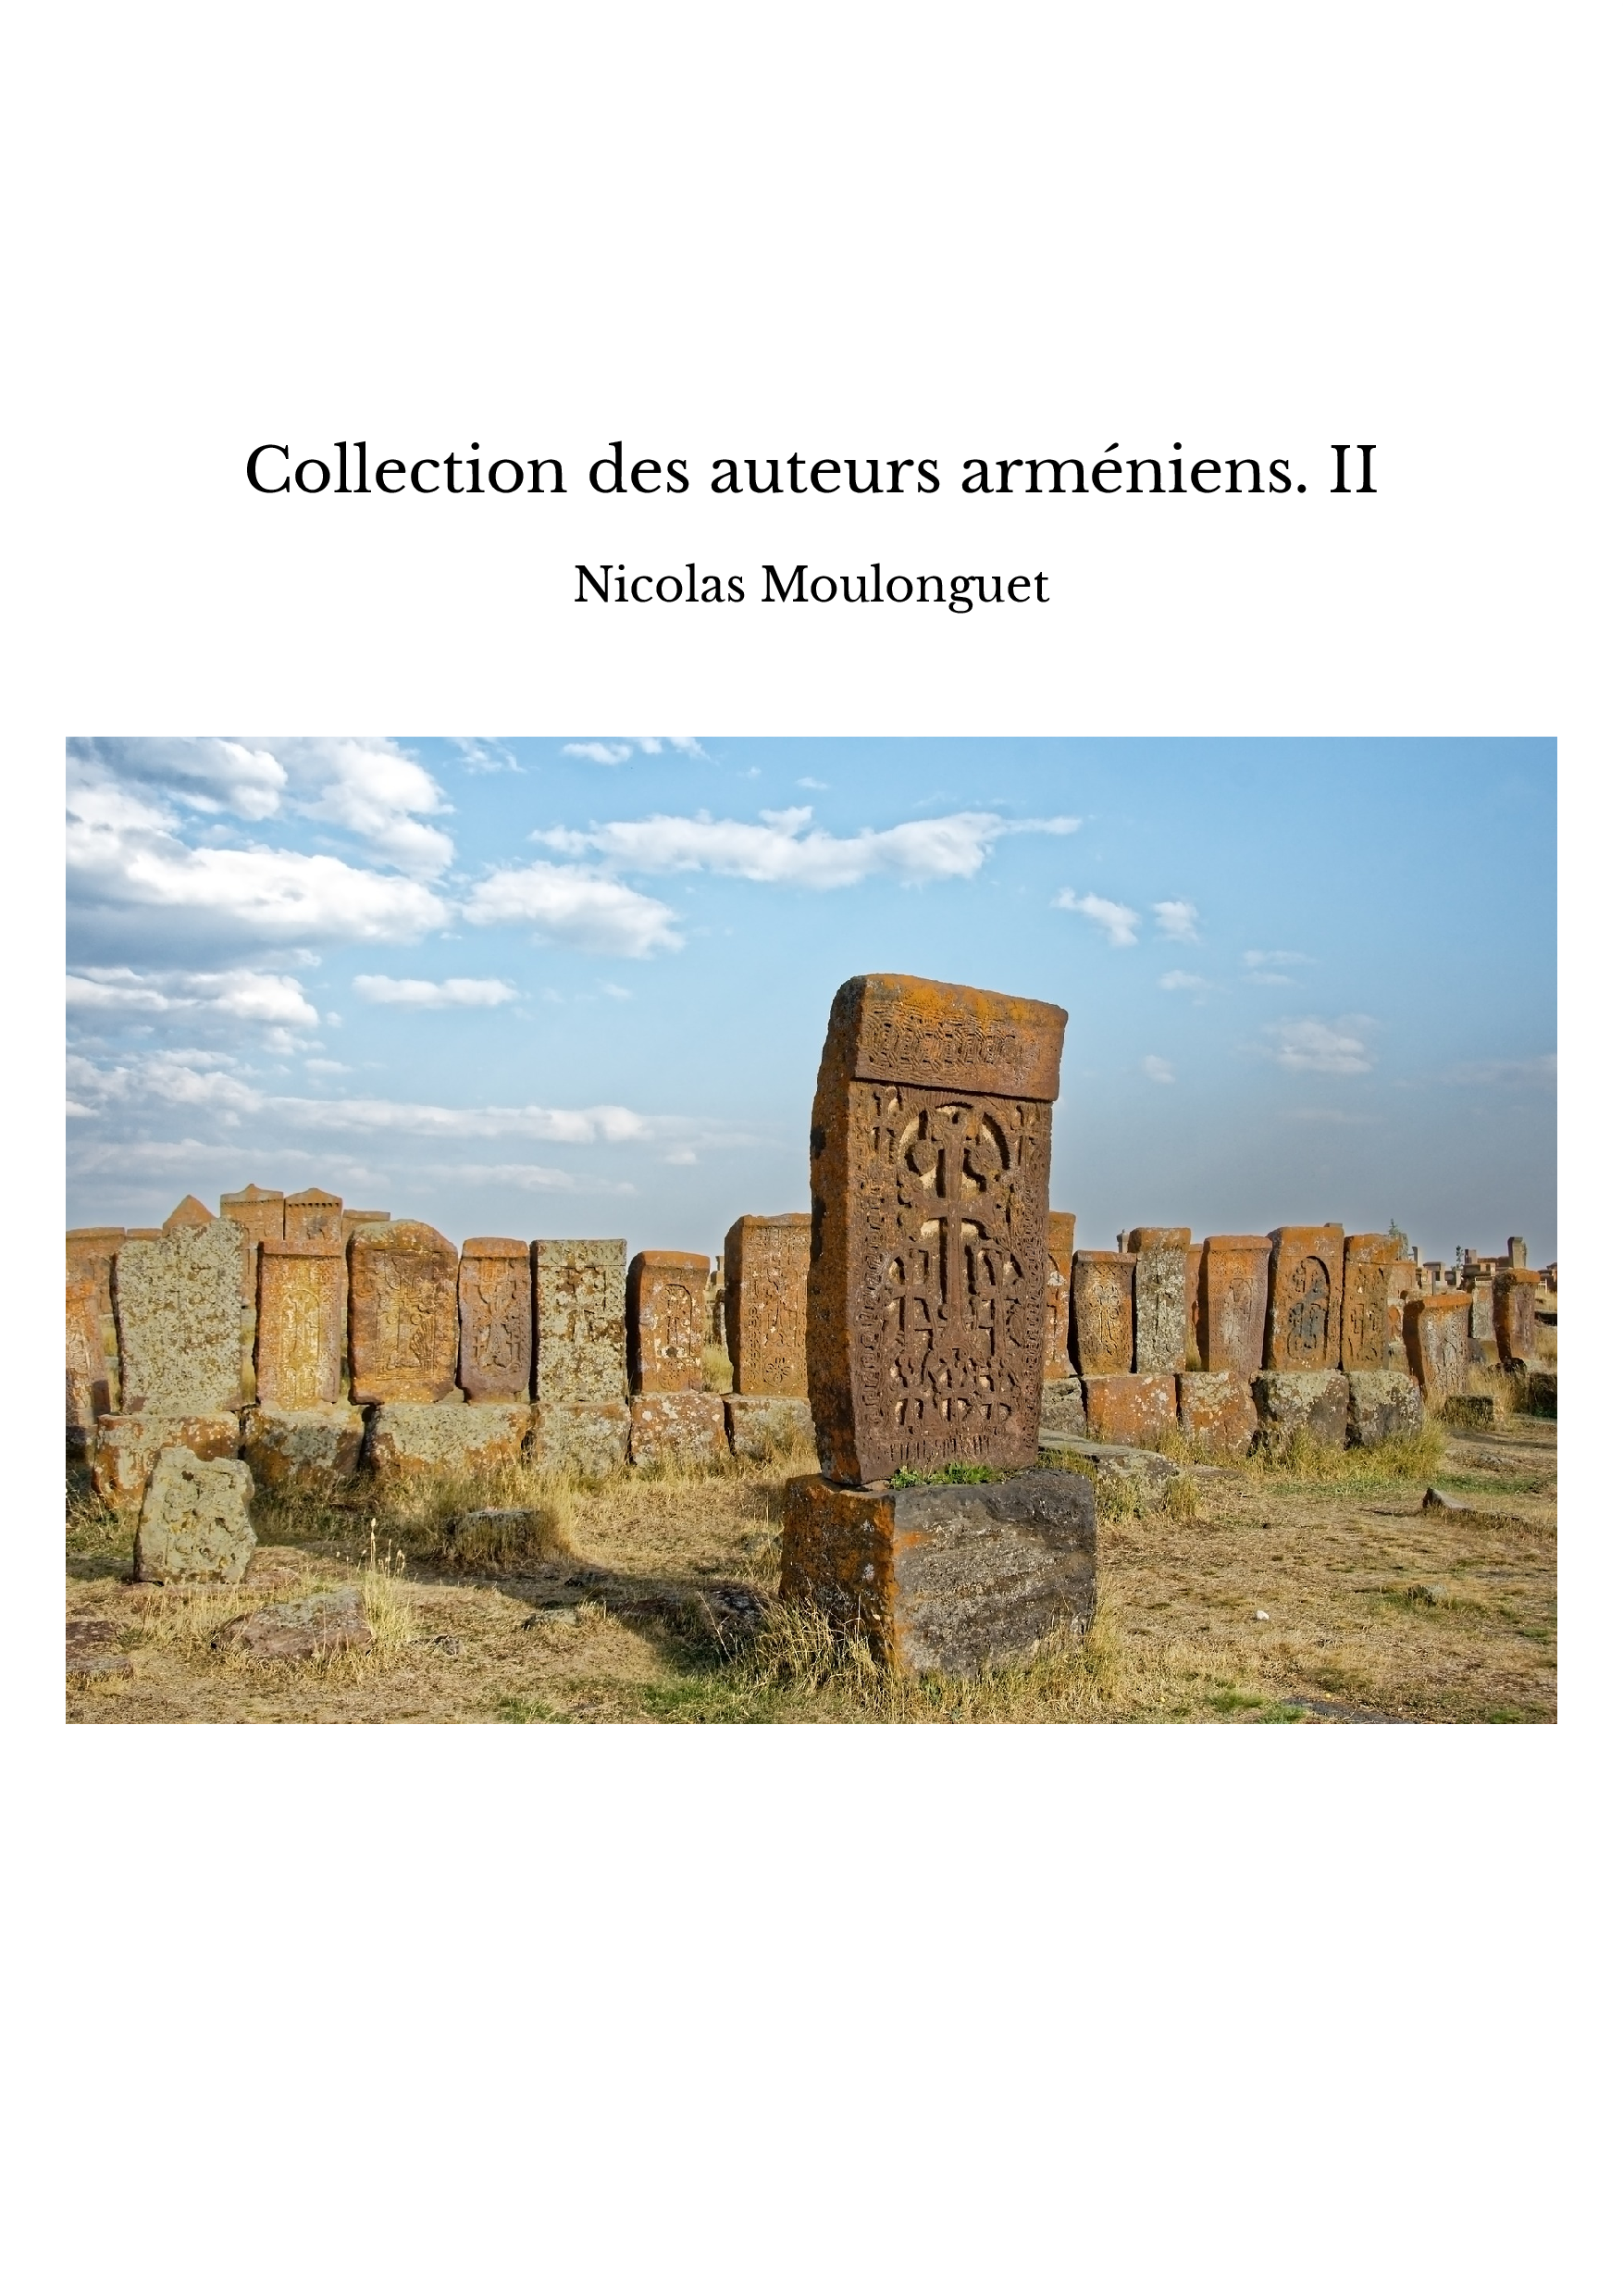 Collection des auteurs arméniens. II